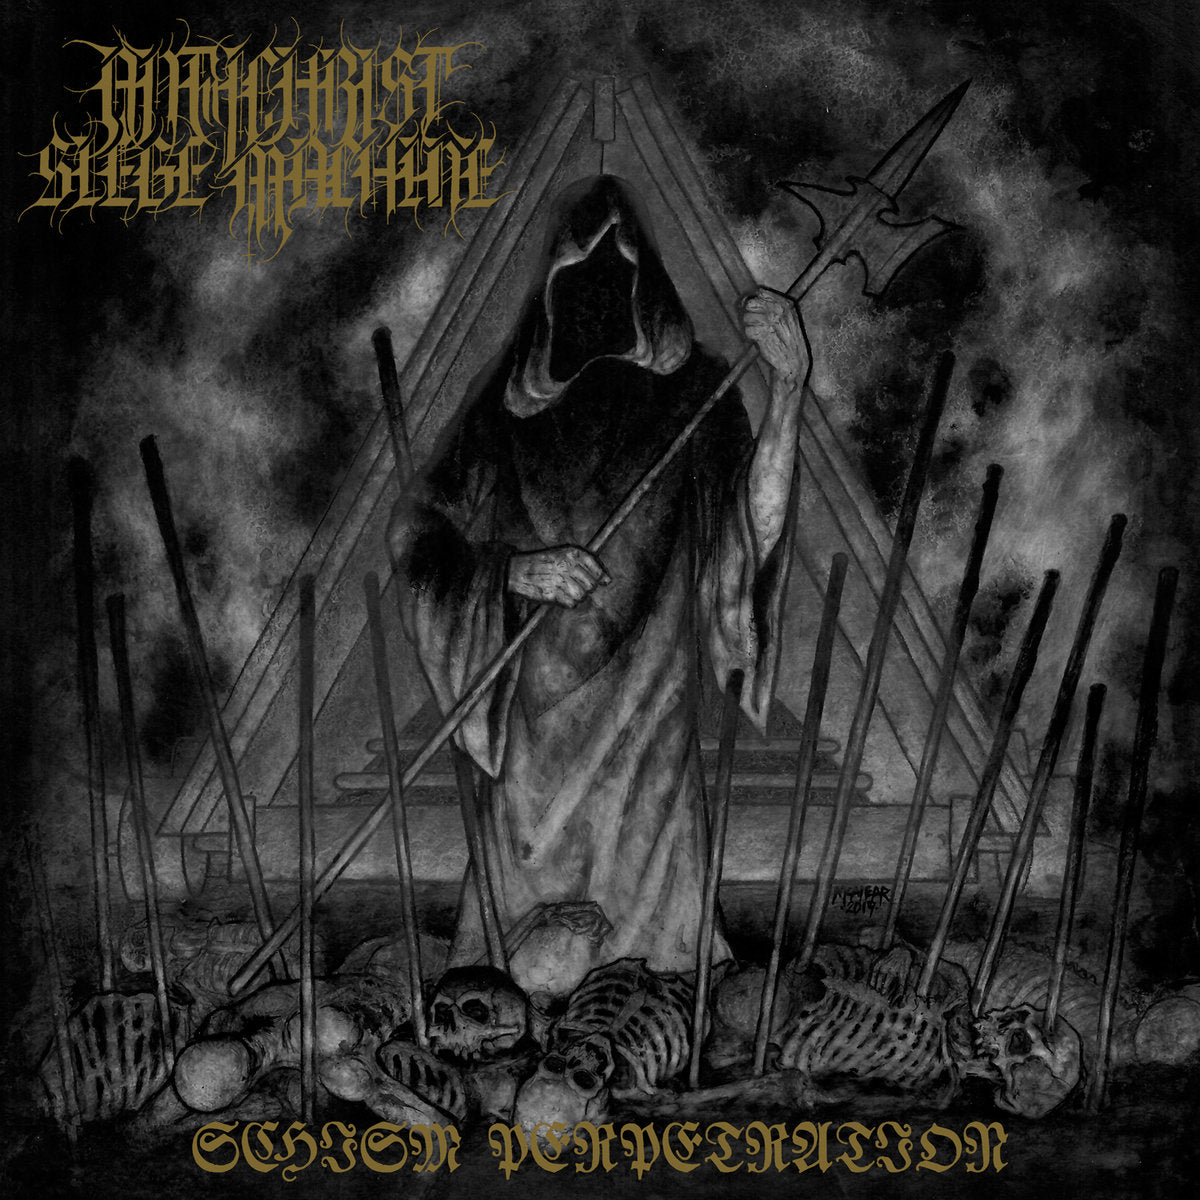 Antichrist Siege Machine - Schism Perpetration CD